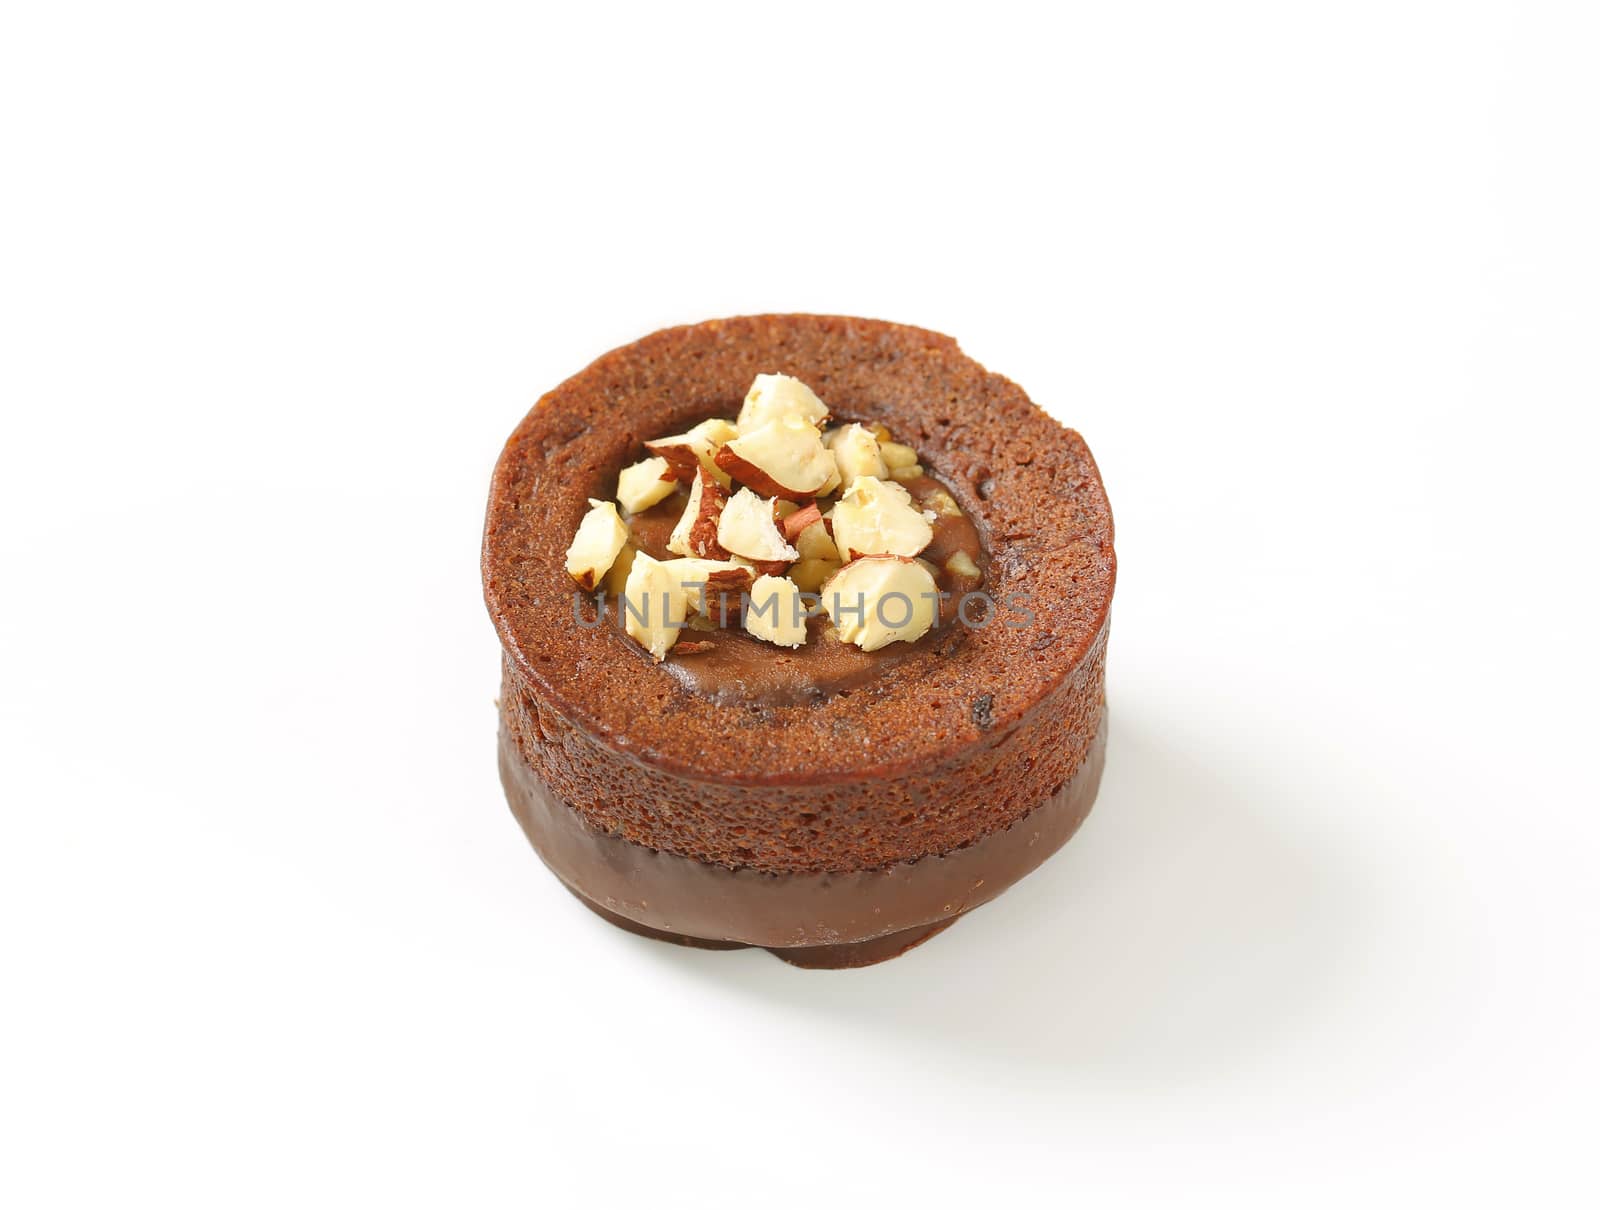 Mini chocolate cake with hazelnut filling